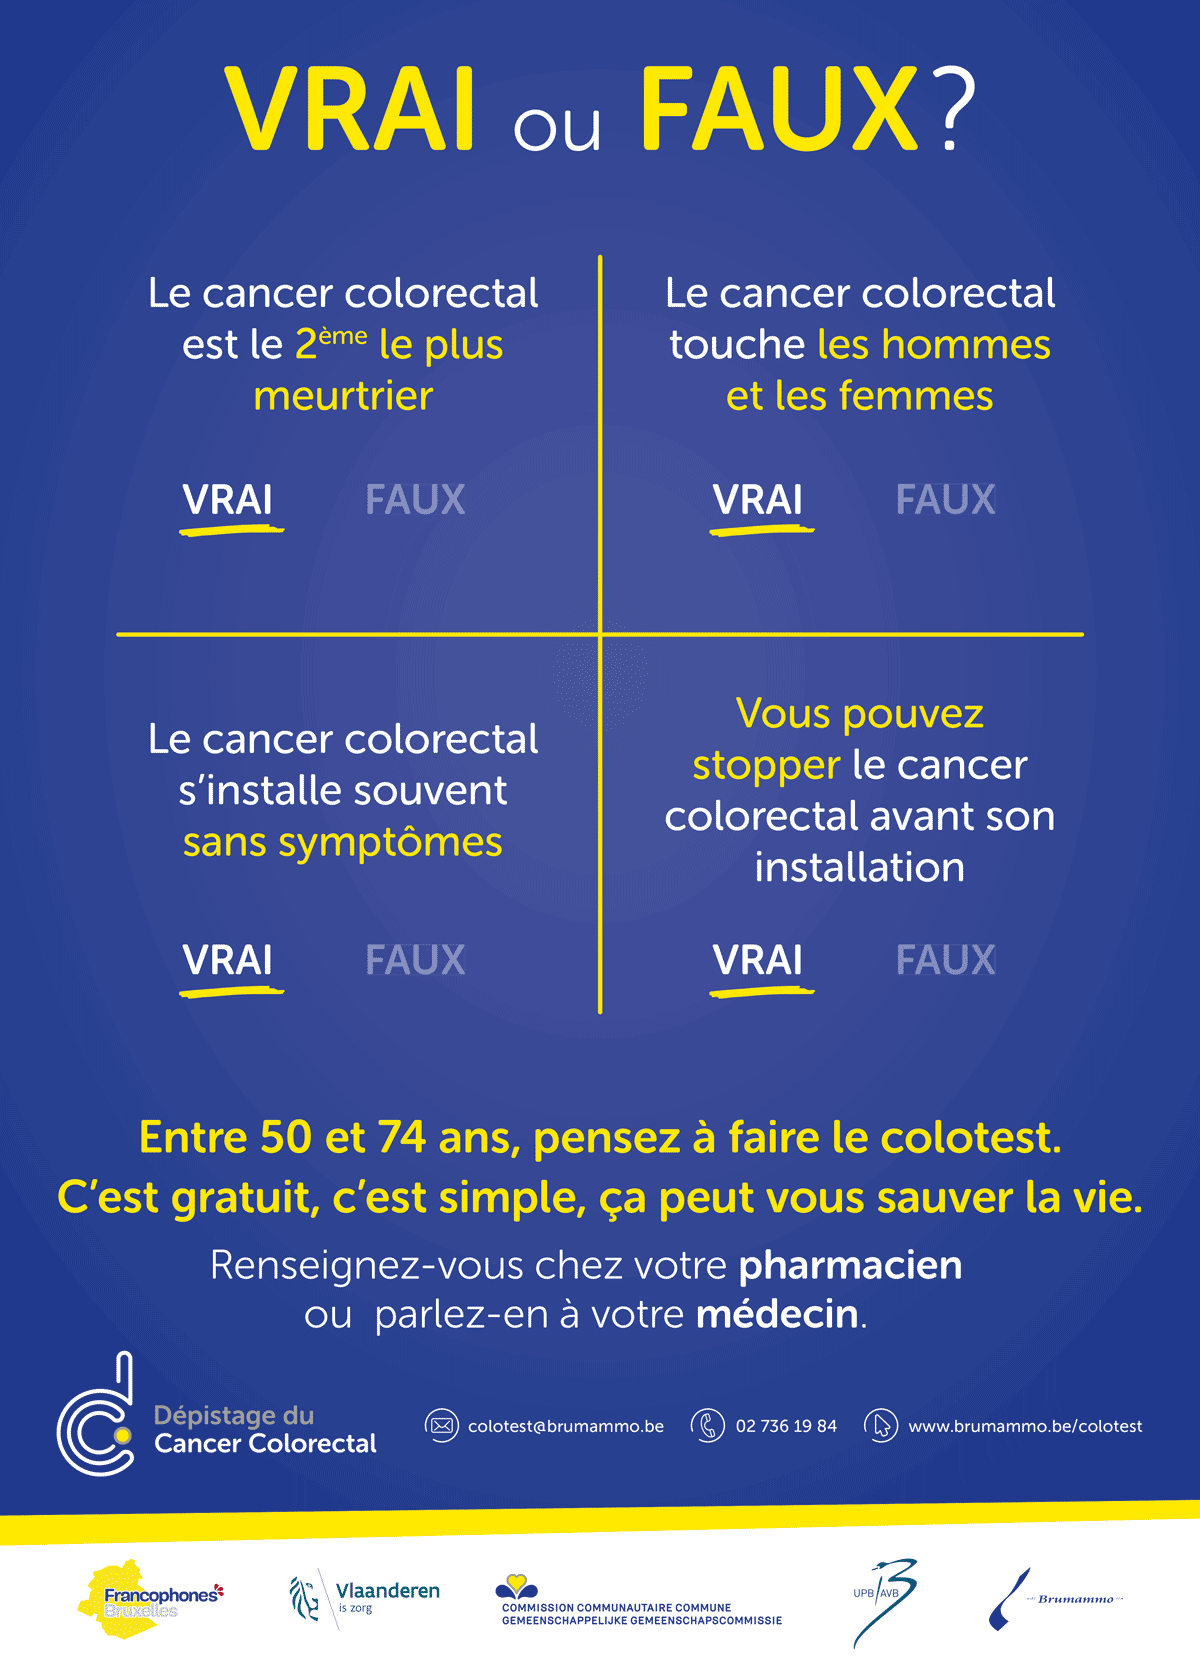 Visuel de l'affiche de la campagne de dépistage du cancer colorectal